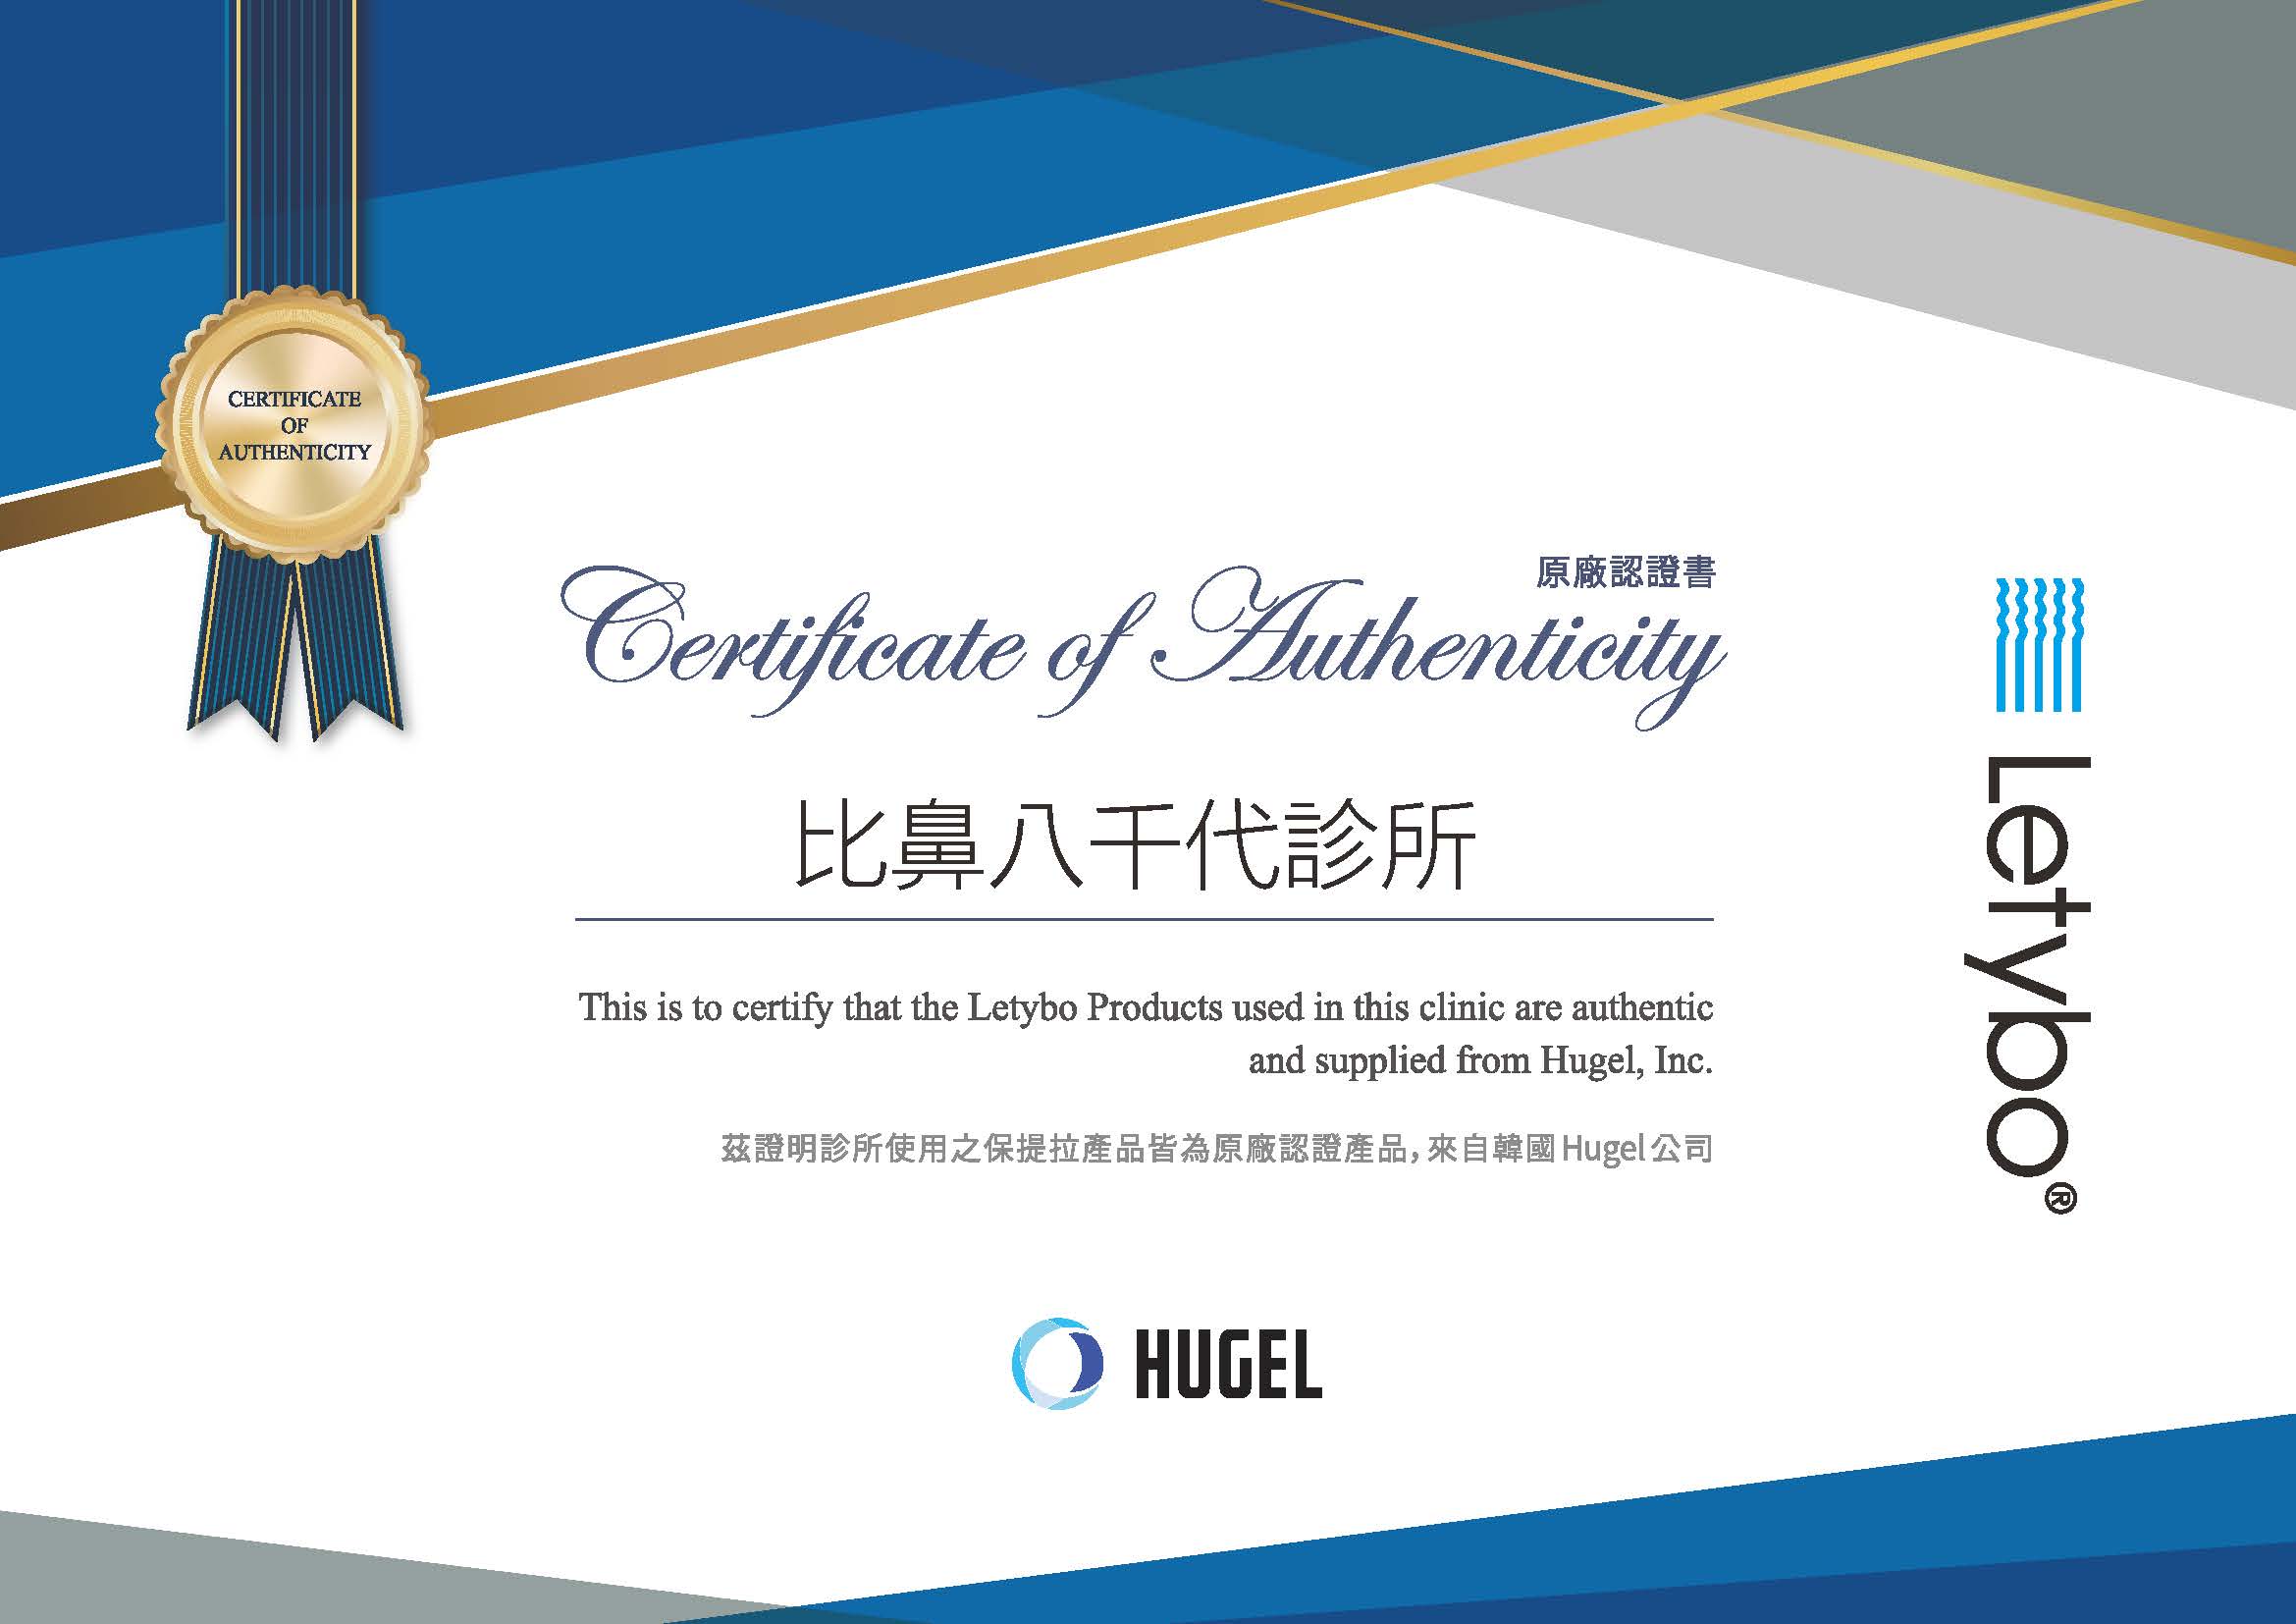 certificate39